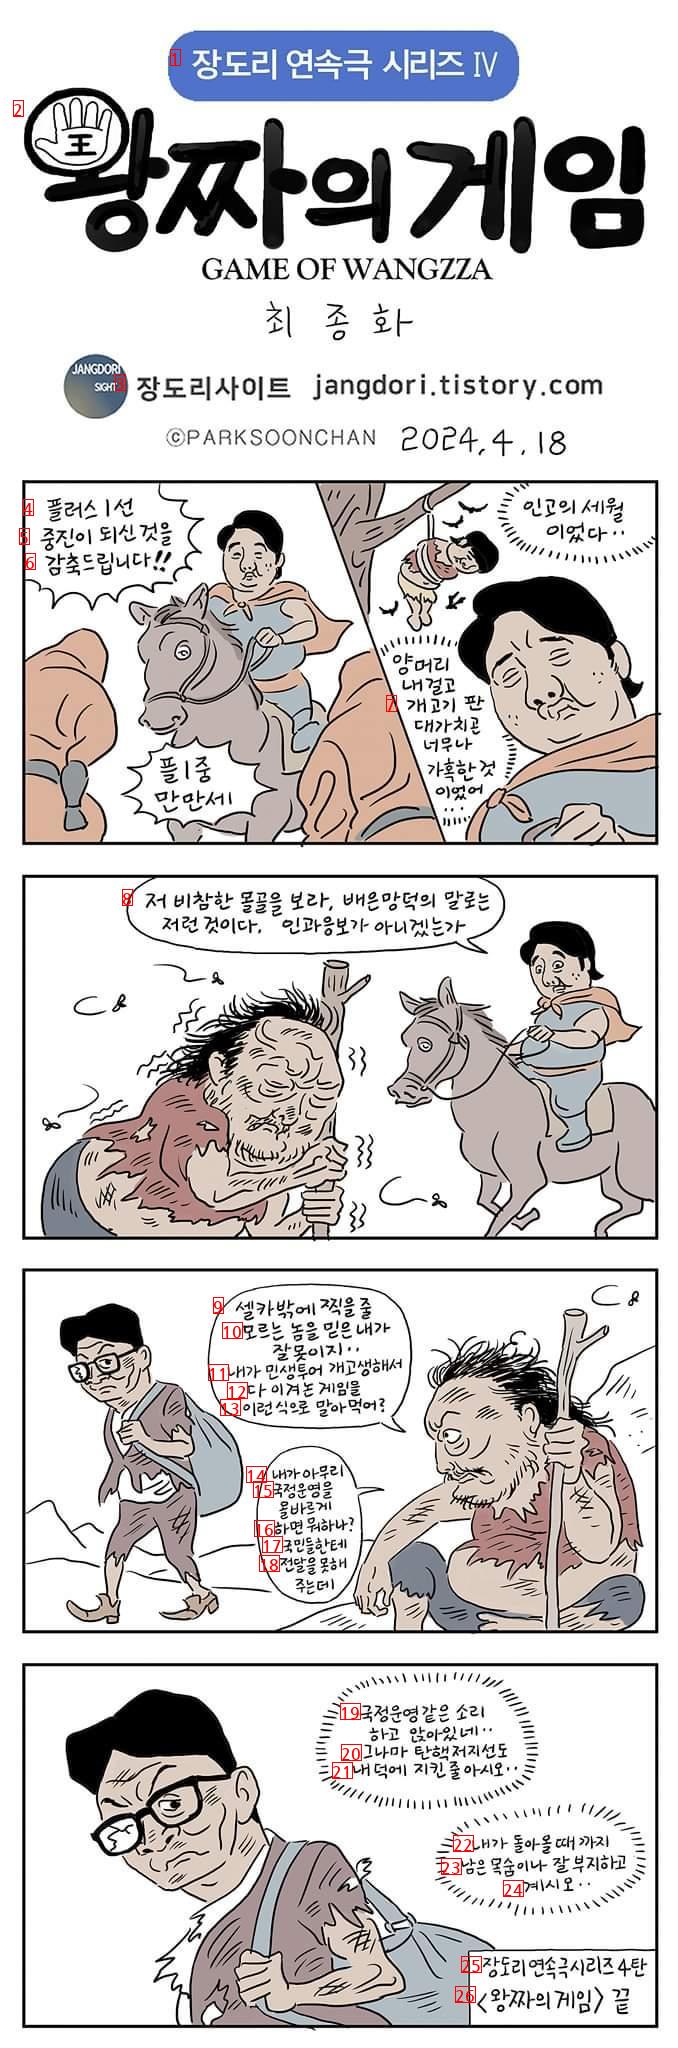 장도리사이트 (왕짜의게임)  마지믹회